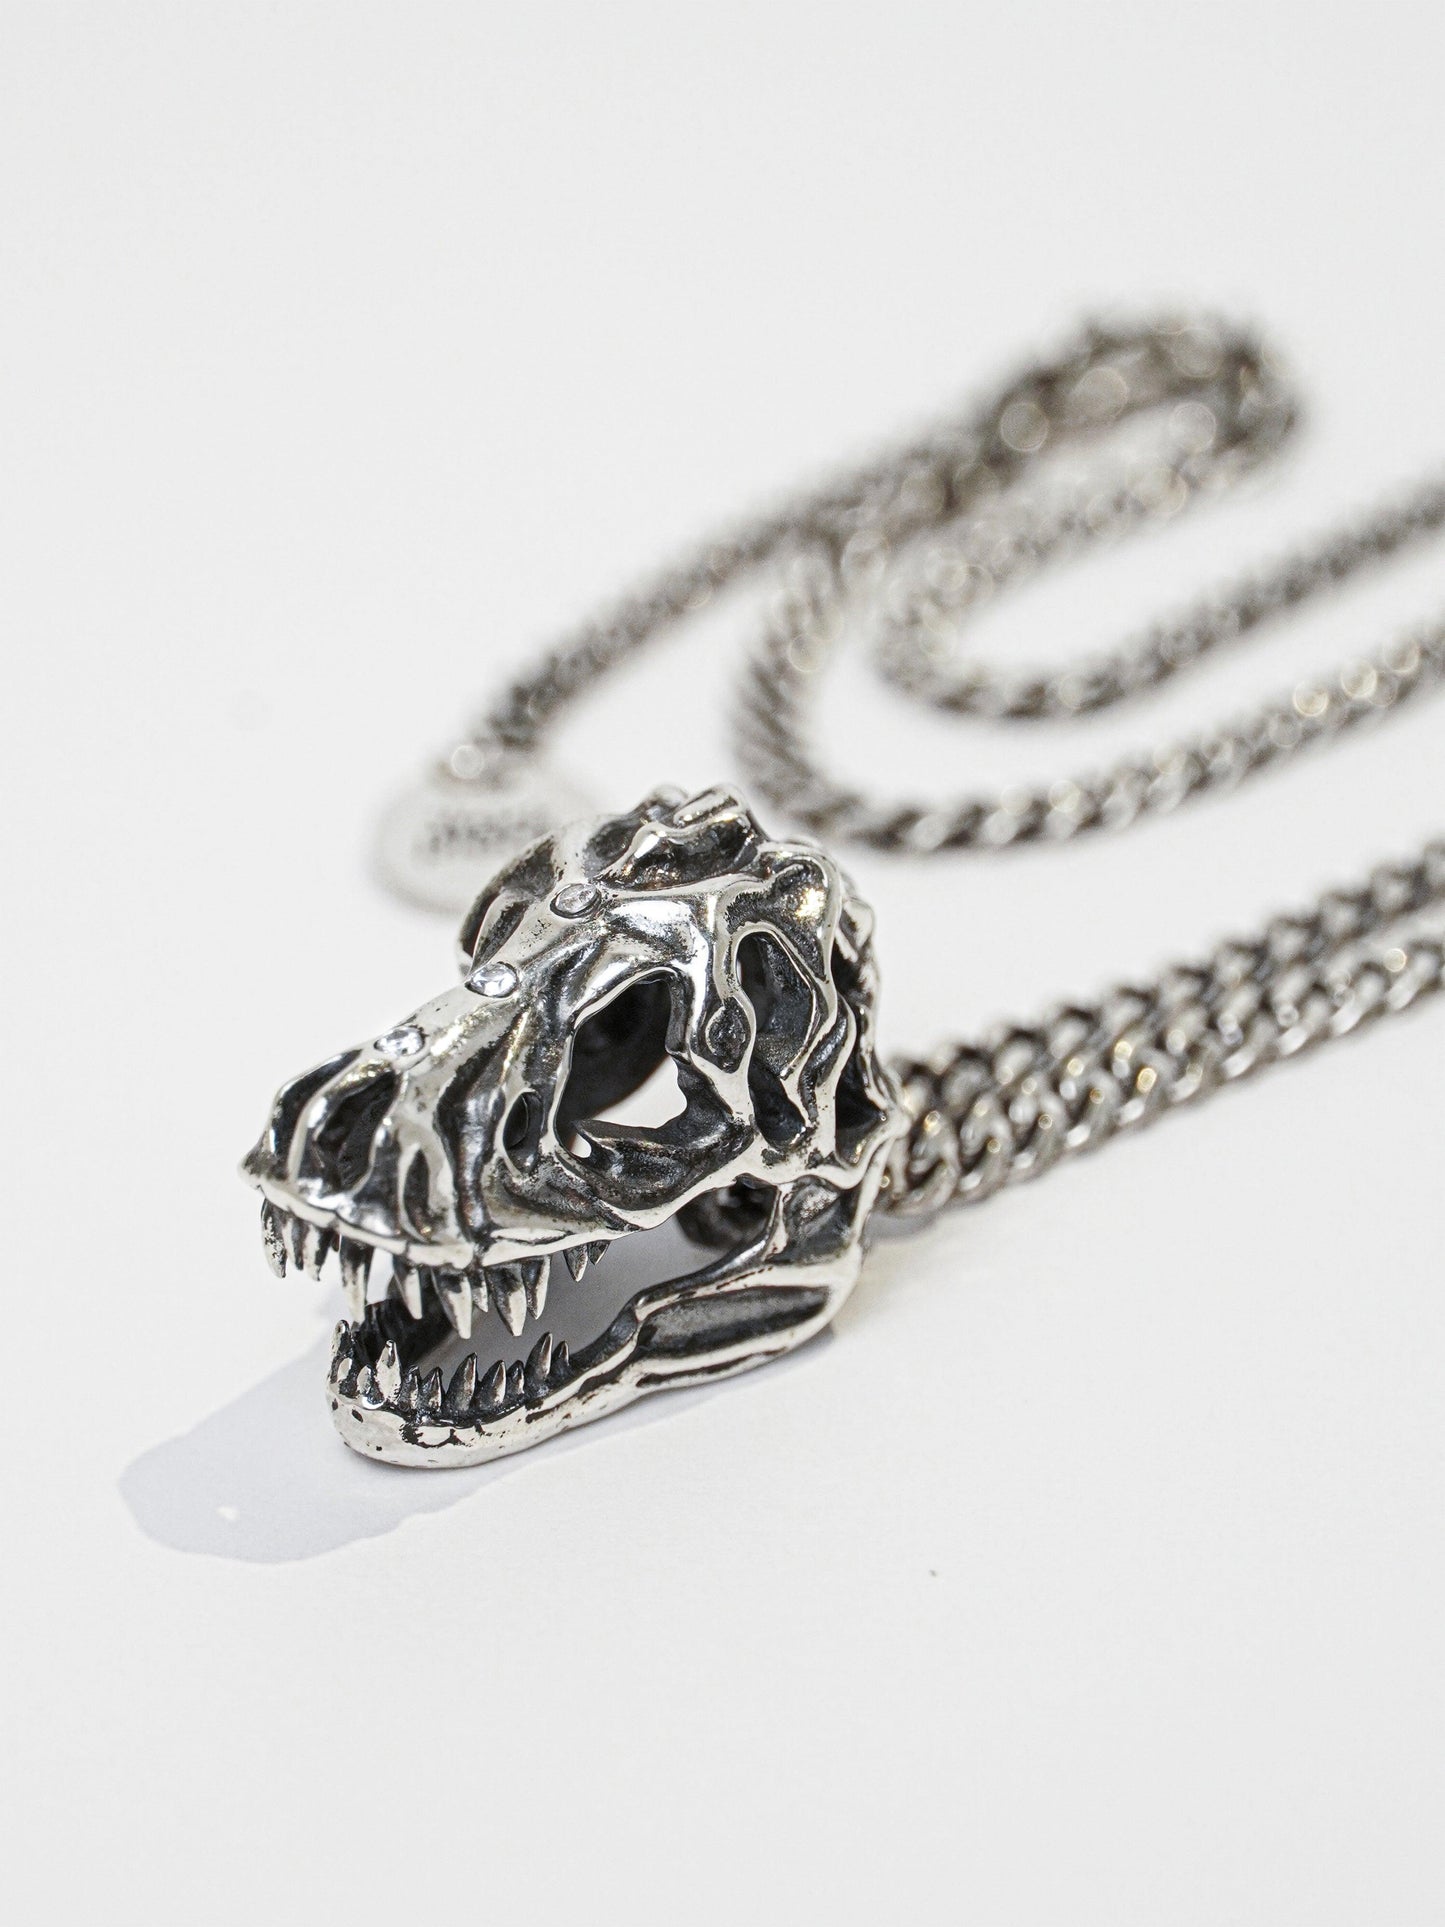 T. rex Skull Necklace - Work Piece